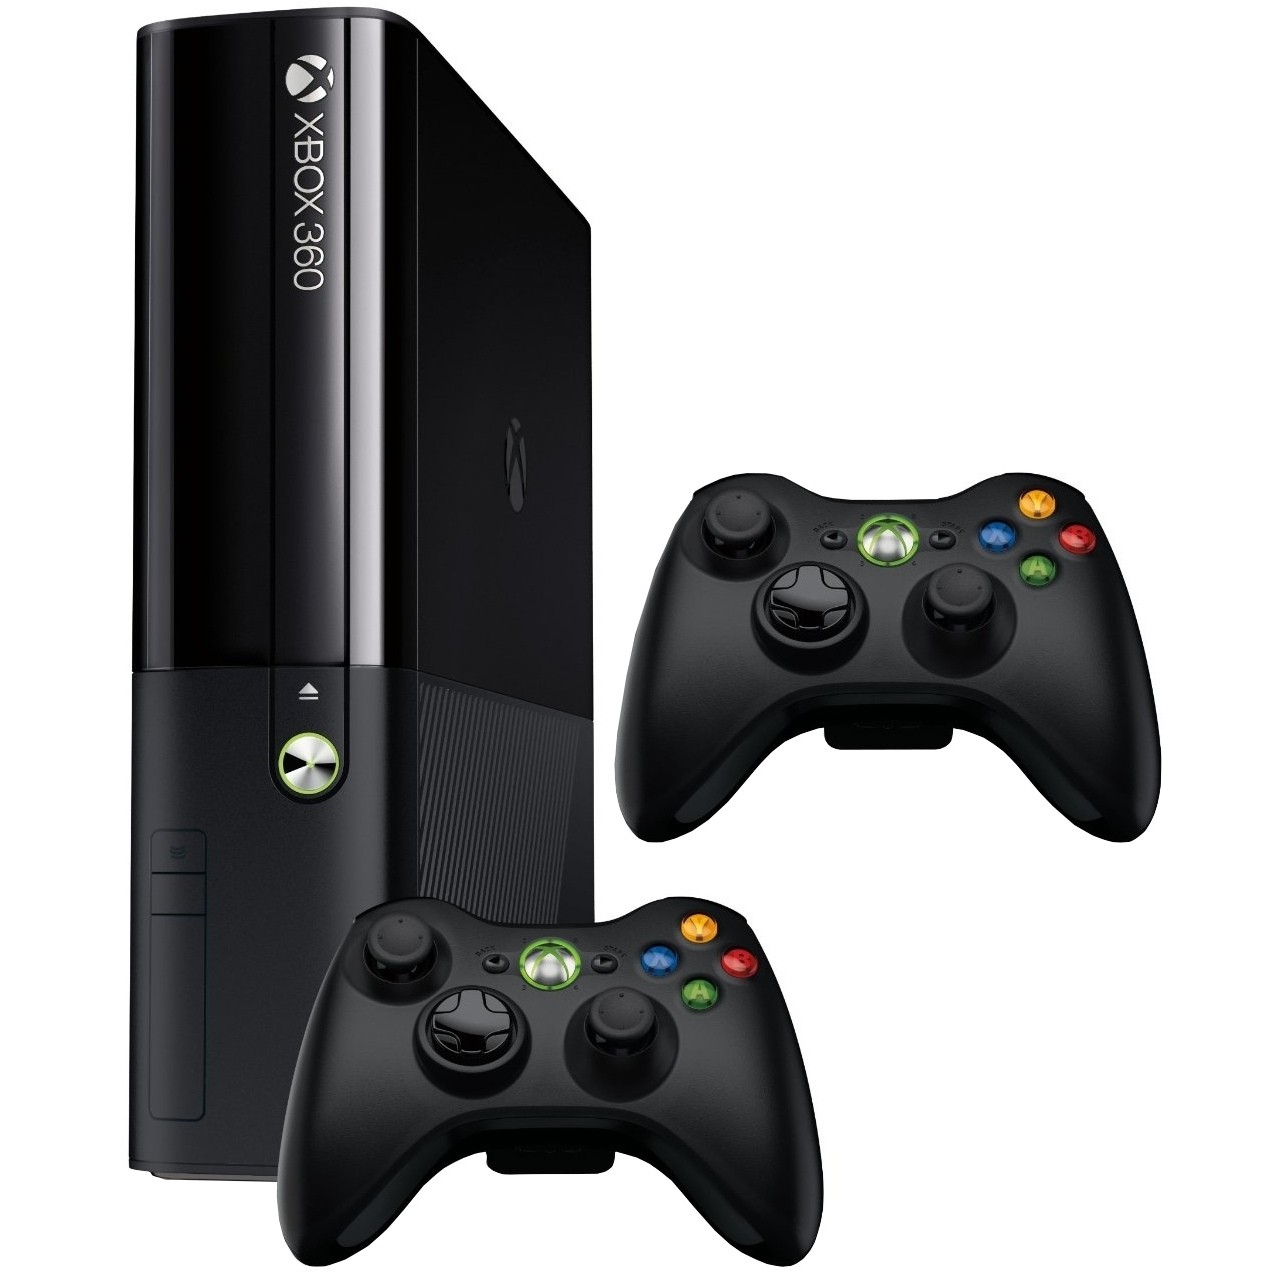 Хбокс купить в москве. Microsoft Xbox 360 e 500 ГБ. Приставка Xbox 360e 500 GB. Игровая приставка Xbox 360 s. Xbox 360 e 500gb и Xbox 360.